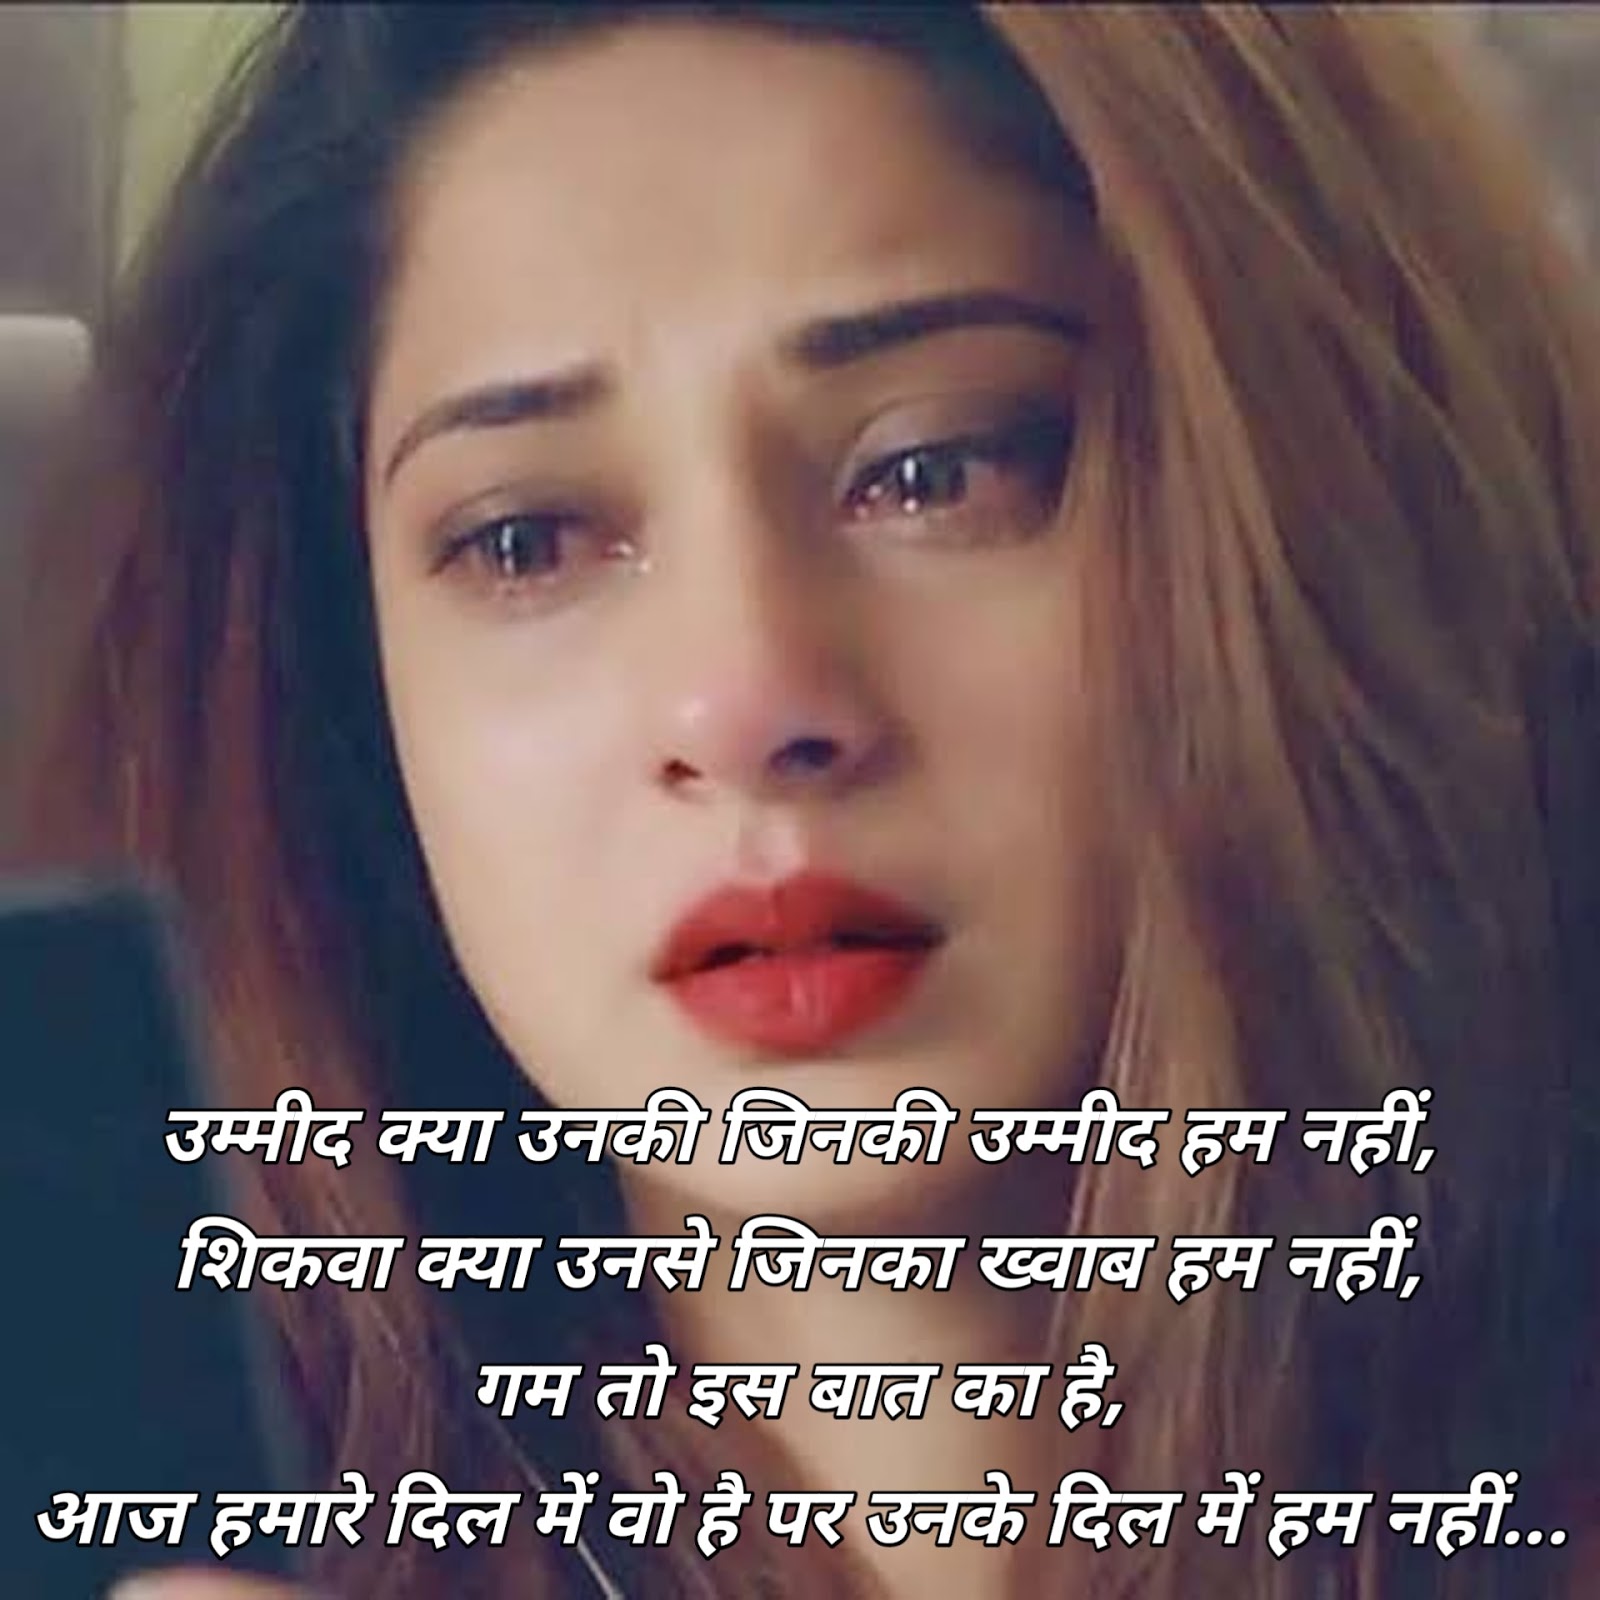 Sad love shayari in Hindi for boyfriend